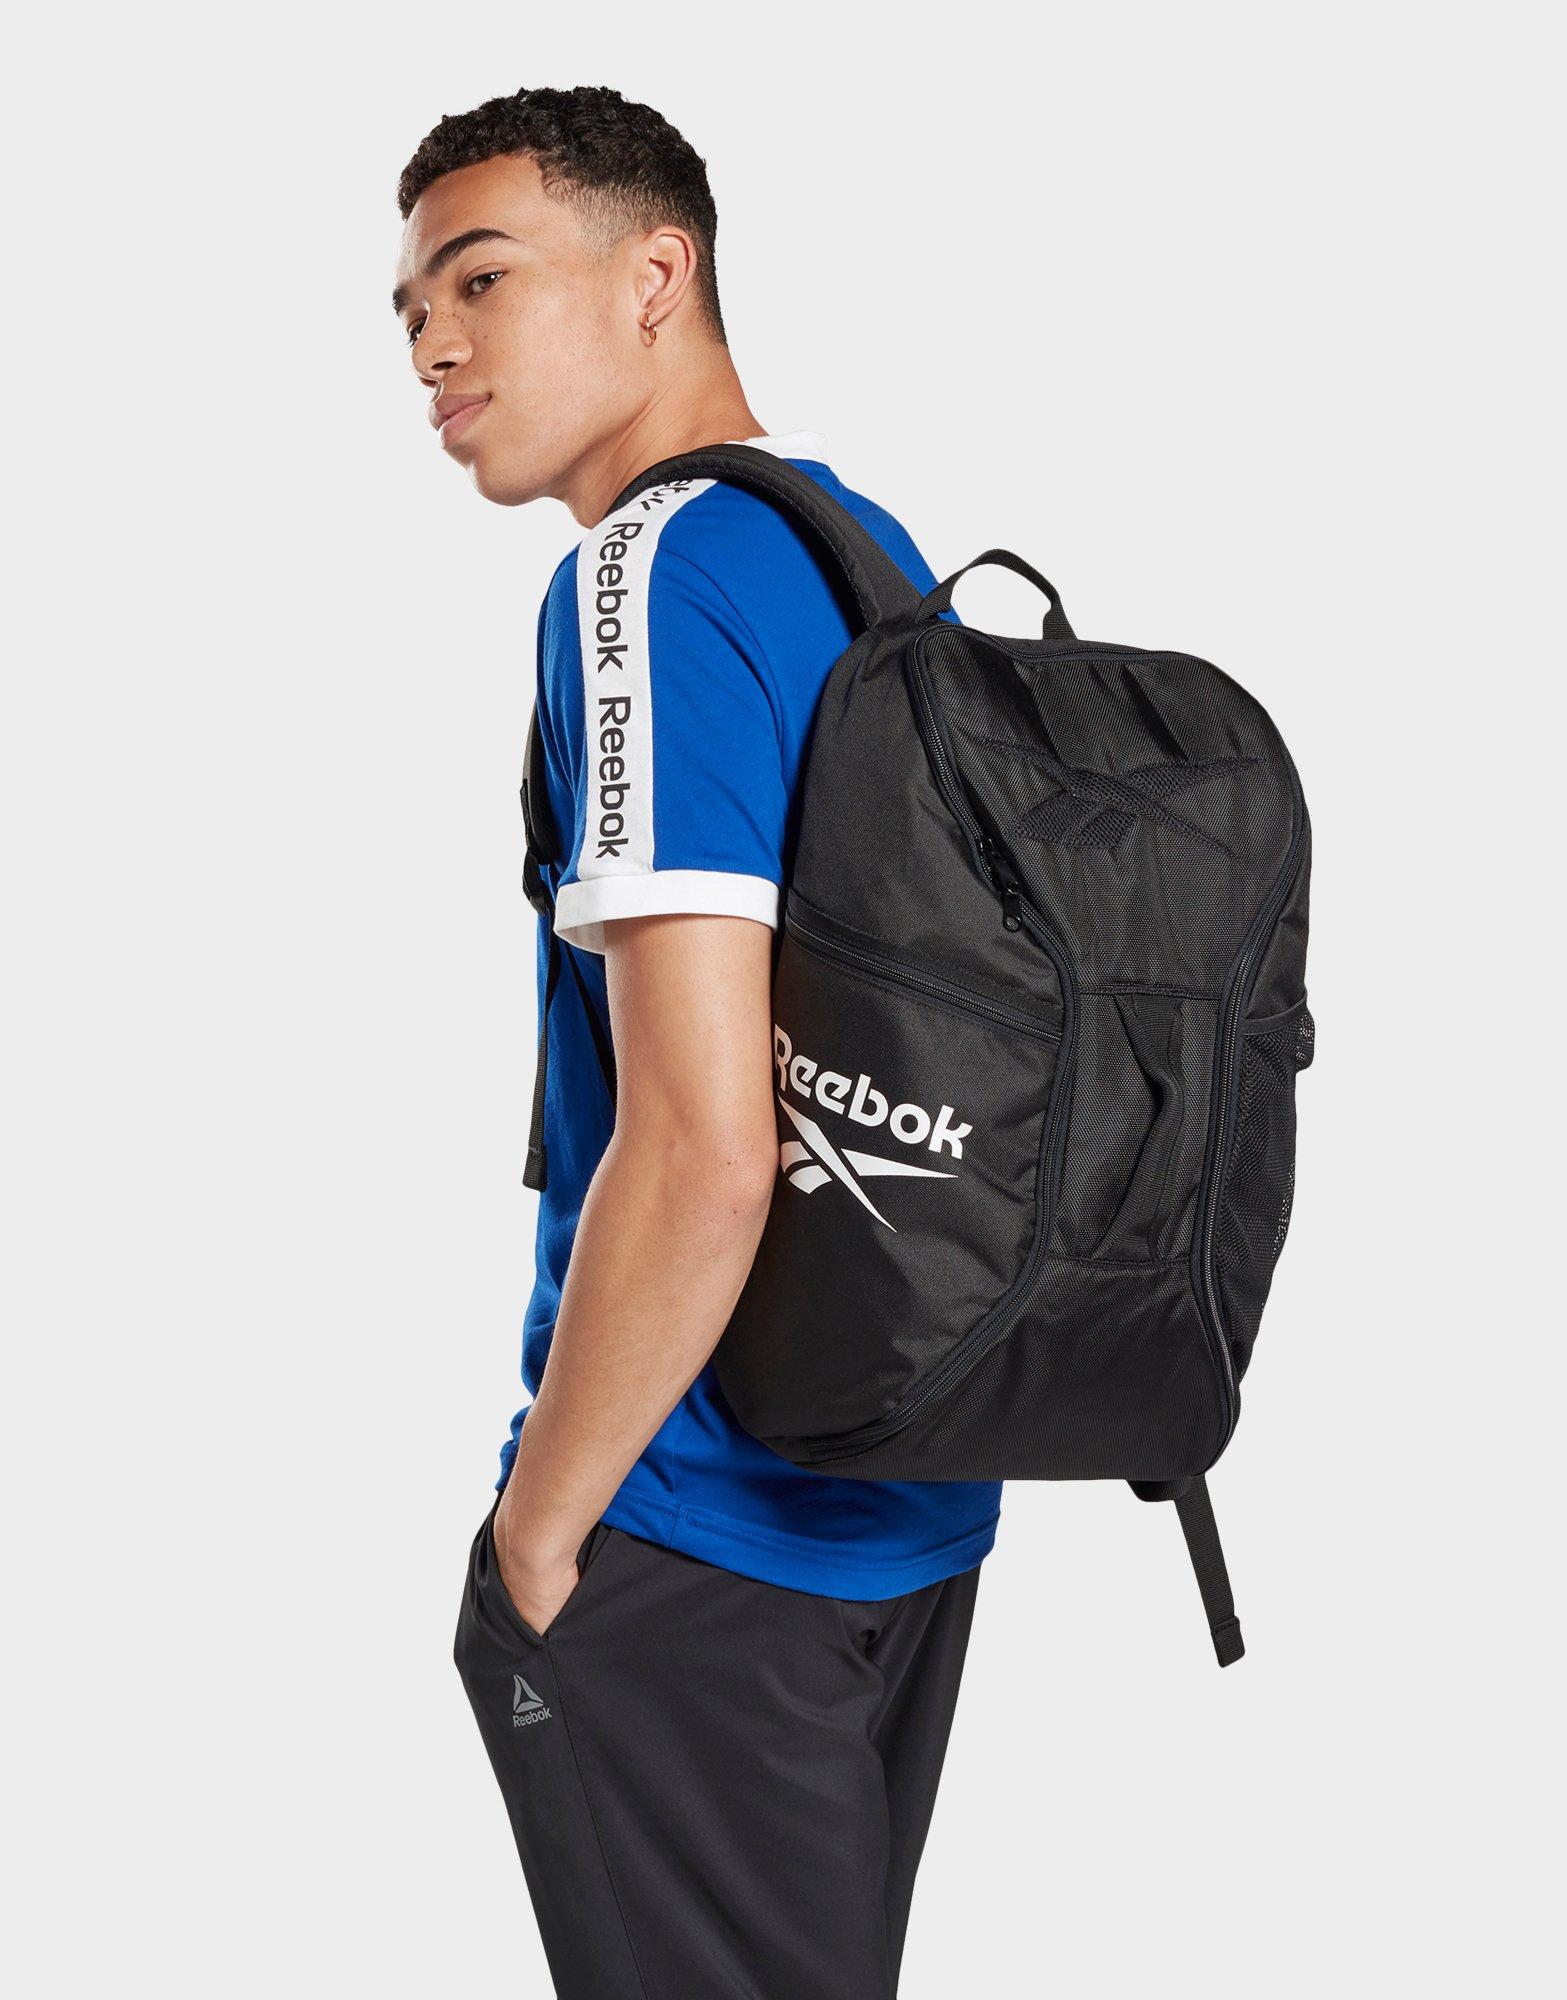 Buy Reebok One Series Training Backpack 